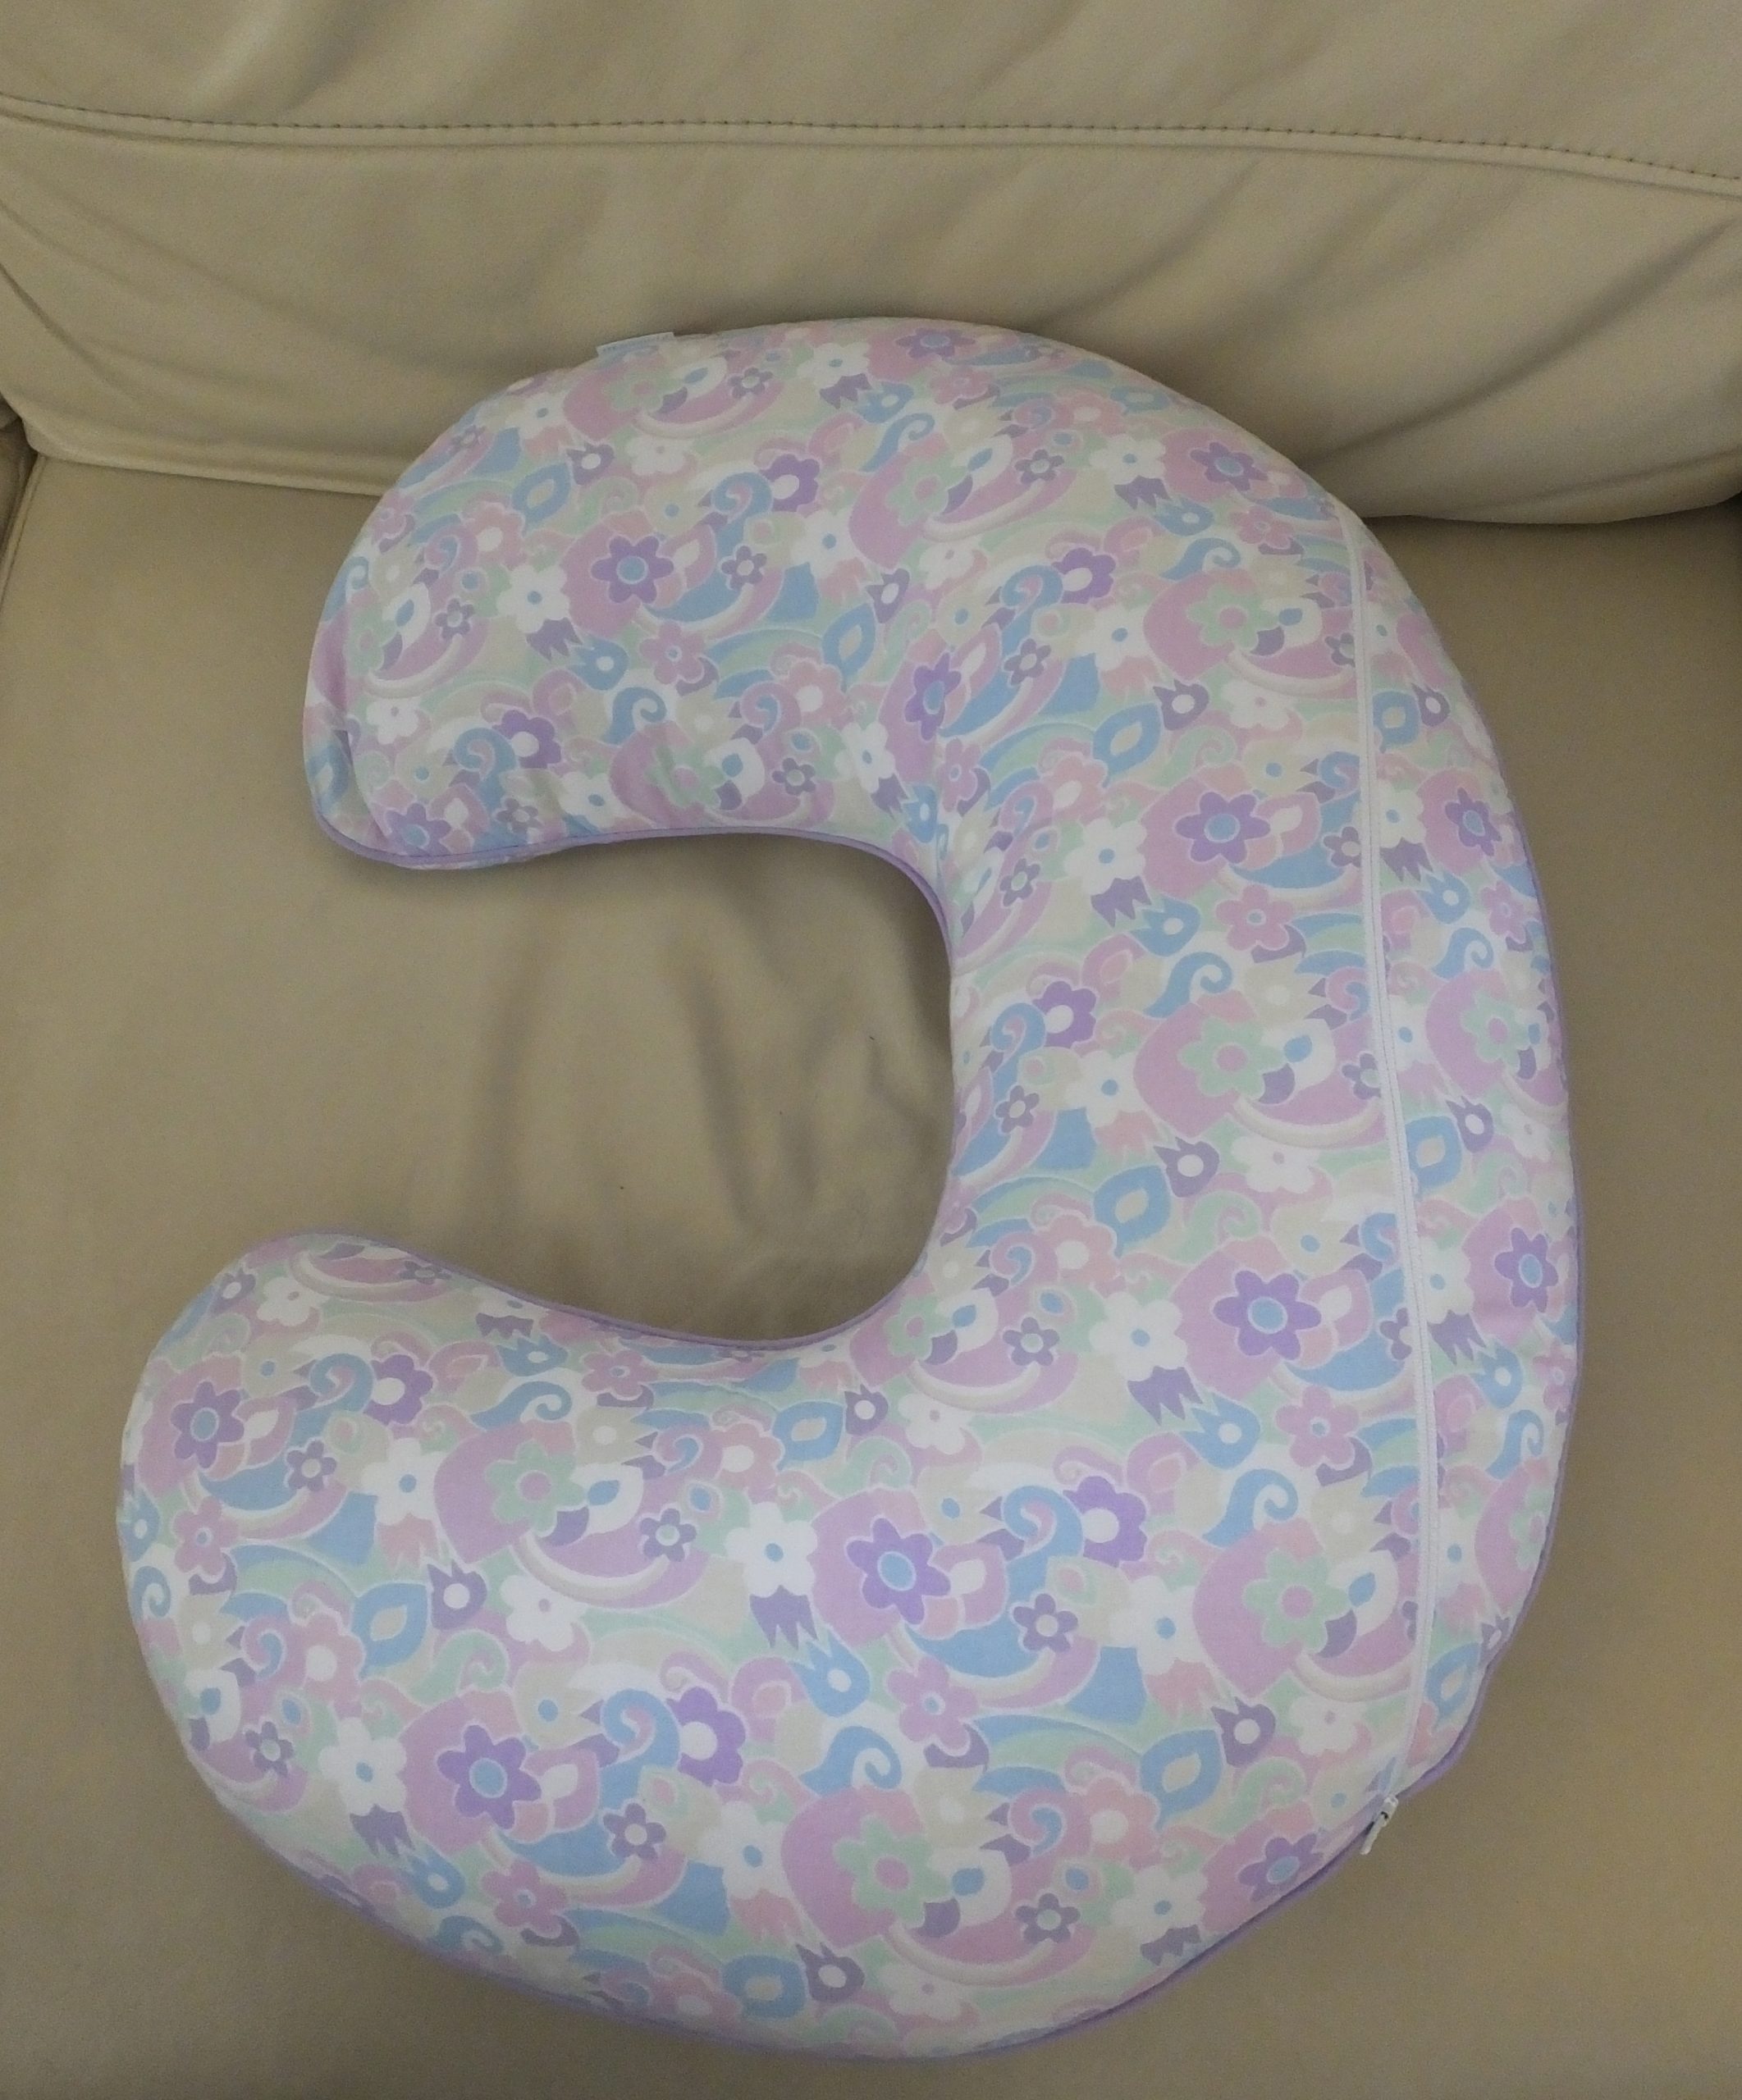 Best Maternity Pillows for Full Body Sleep Reviews